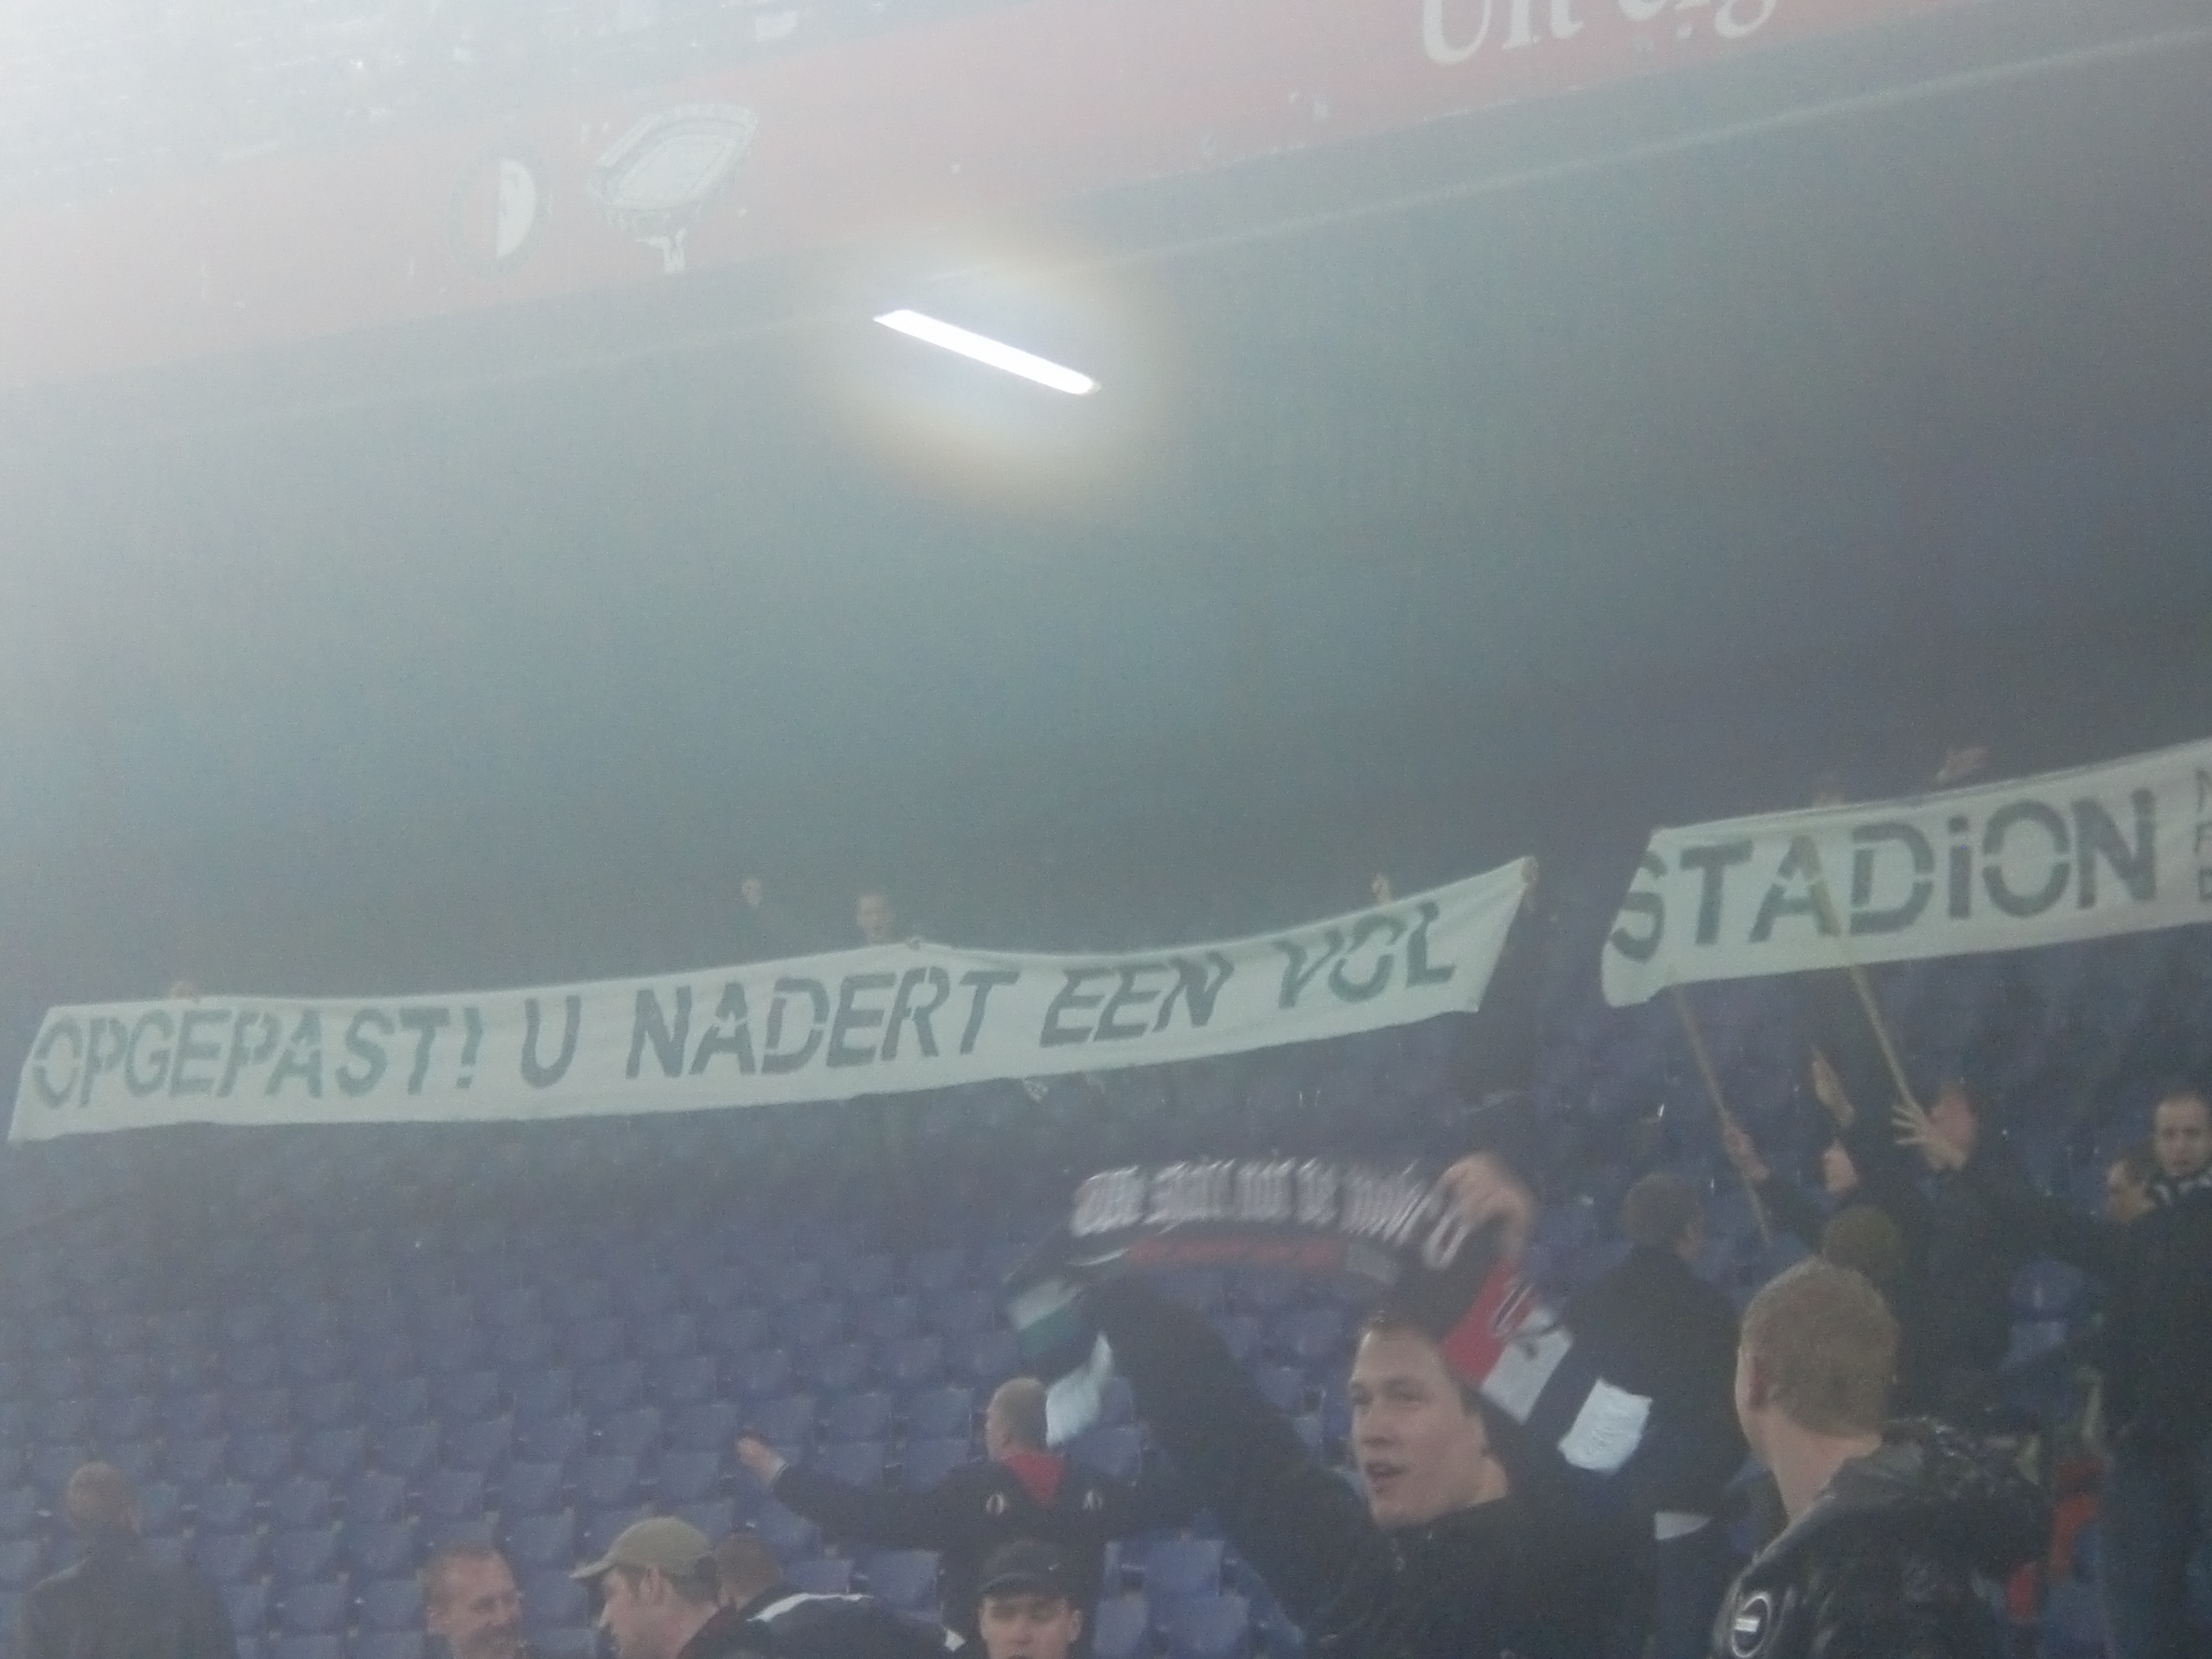 Feyenoord Supporters met ludiek spandoek jegens Vitesse Fans "Opgepast! U Nadert een vol stadion"